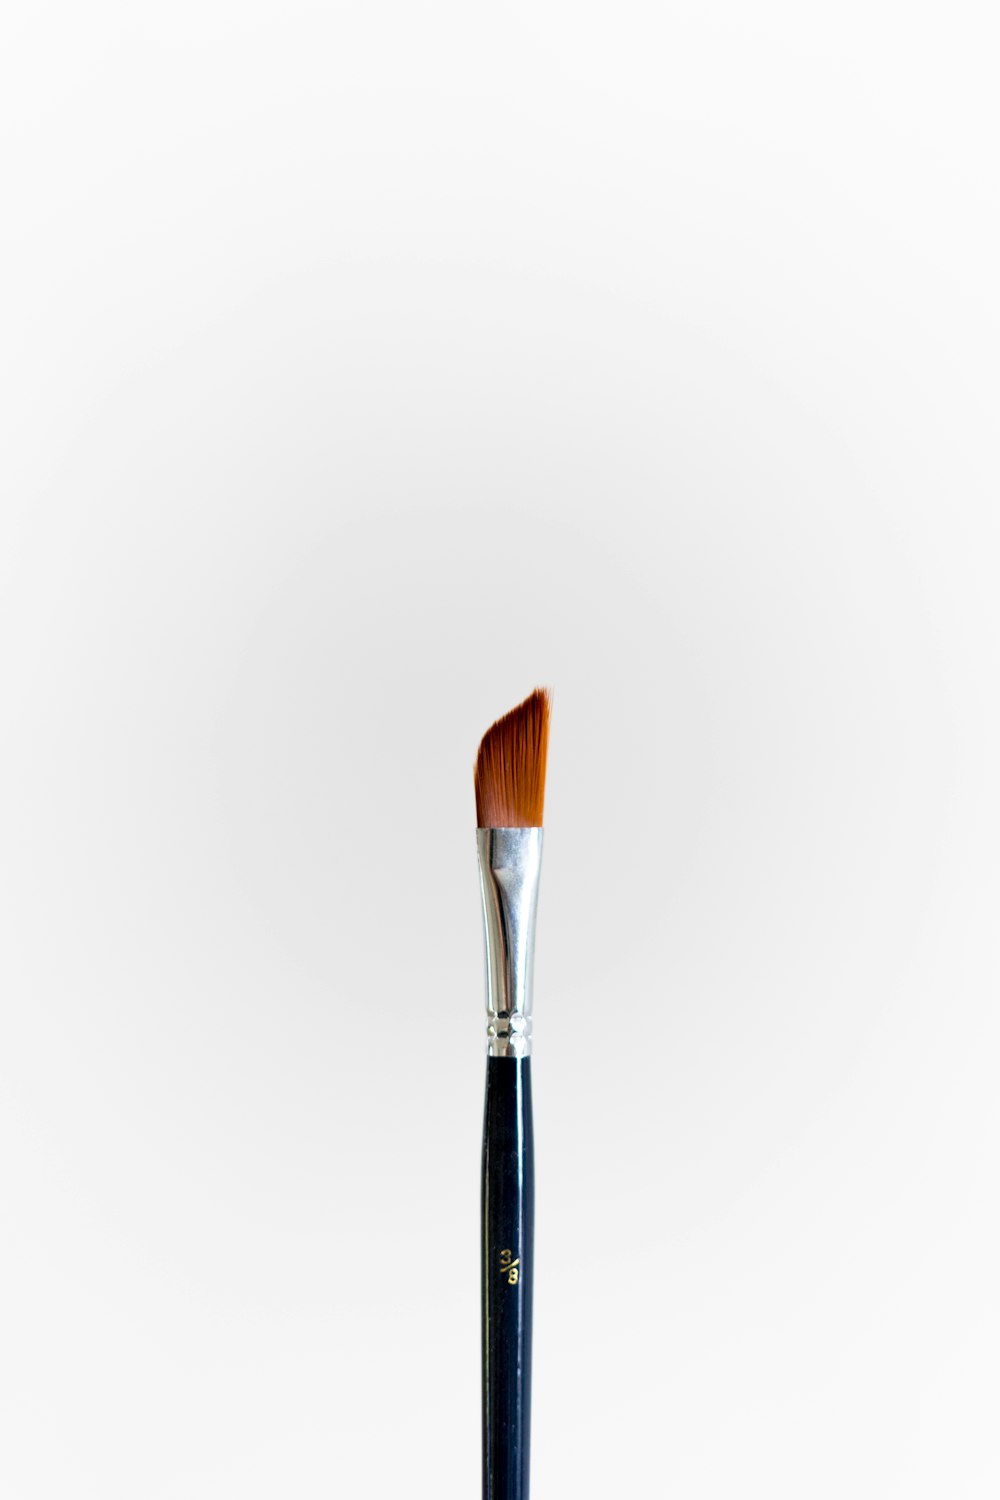 black and brown makeup brush